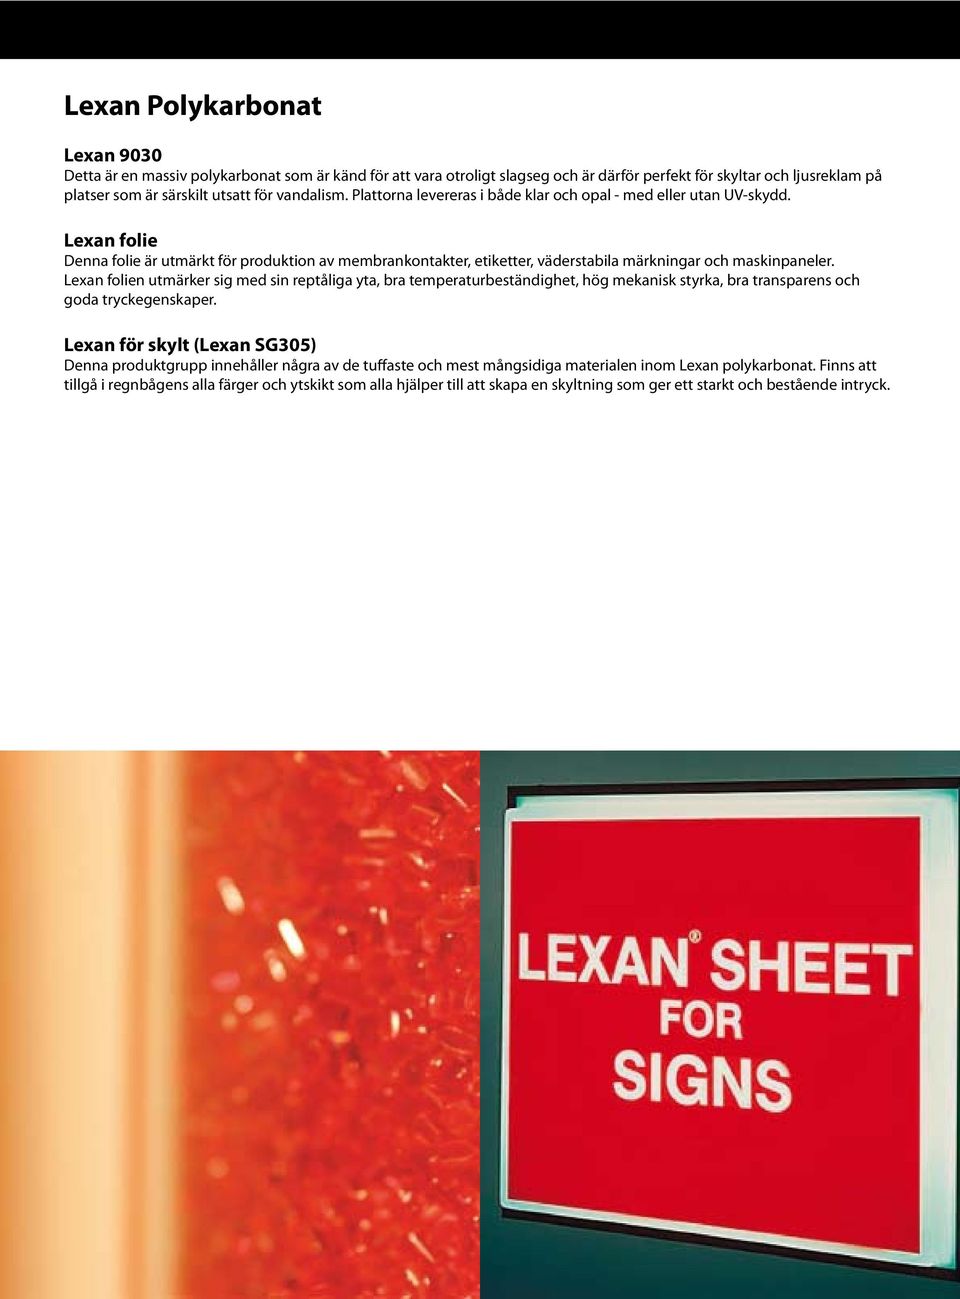 Lexan folie Denna folie är utmärkt för produktion av membrankontakter, etiketter, väderstabila märkningar och maskinpaneler.